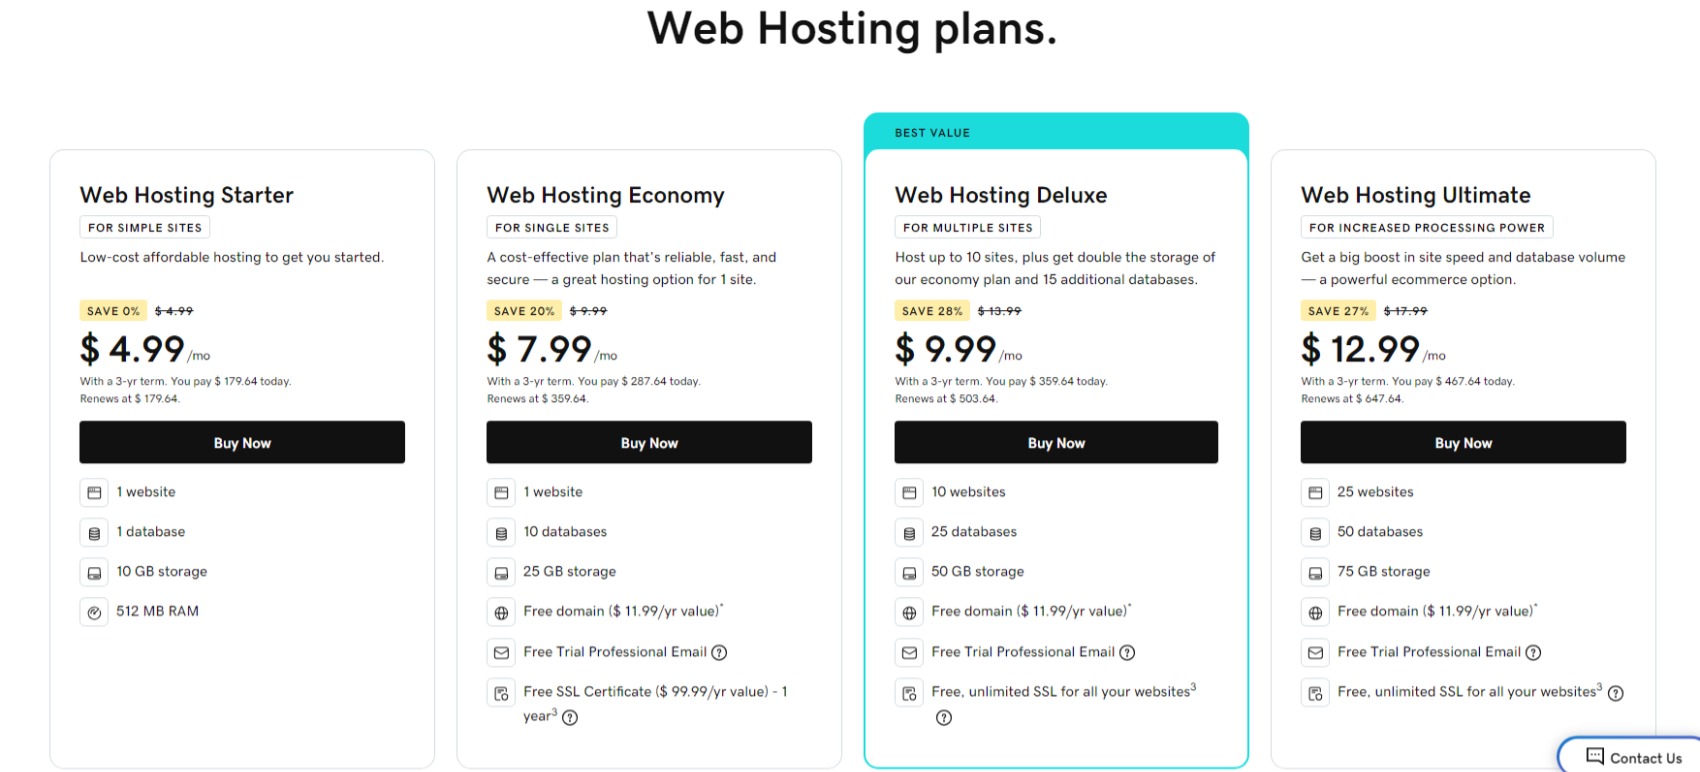 Godaddy Web Hosting plans